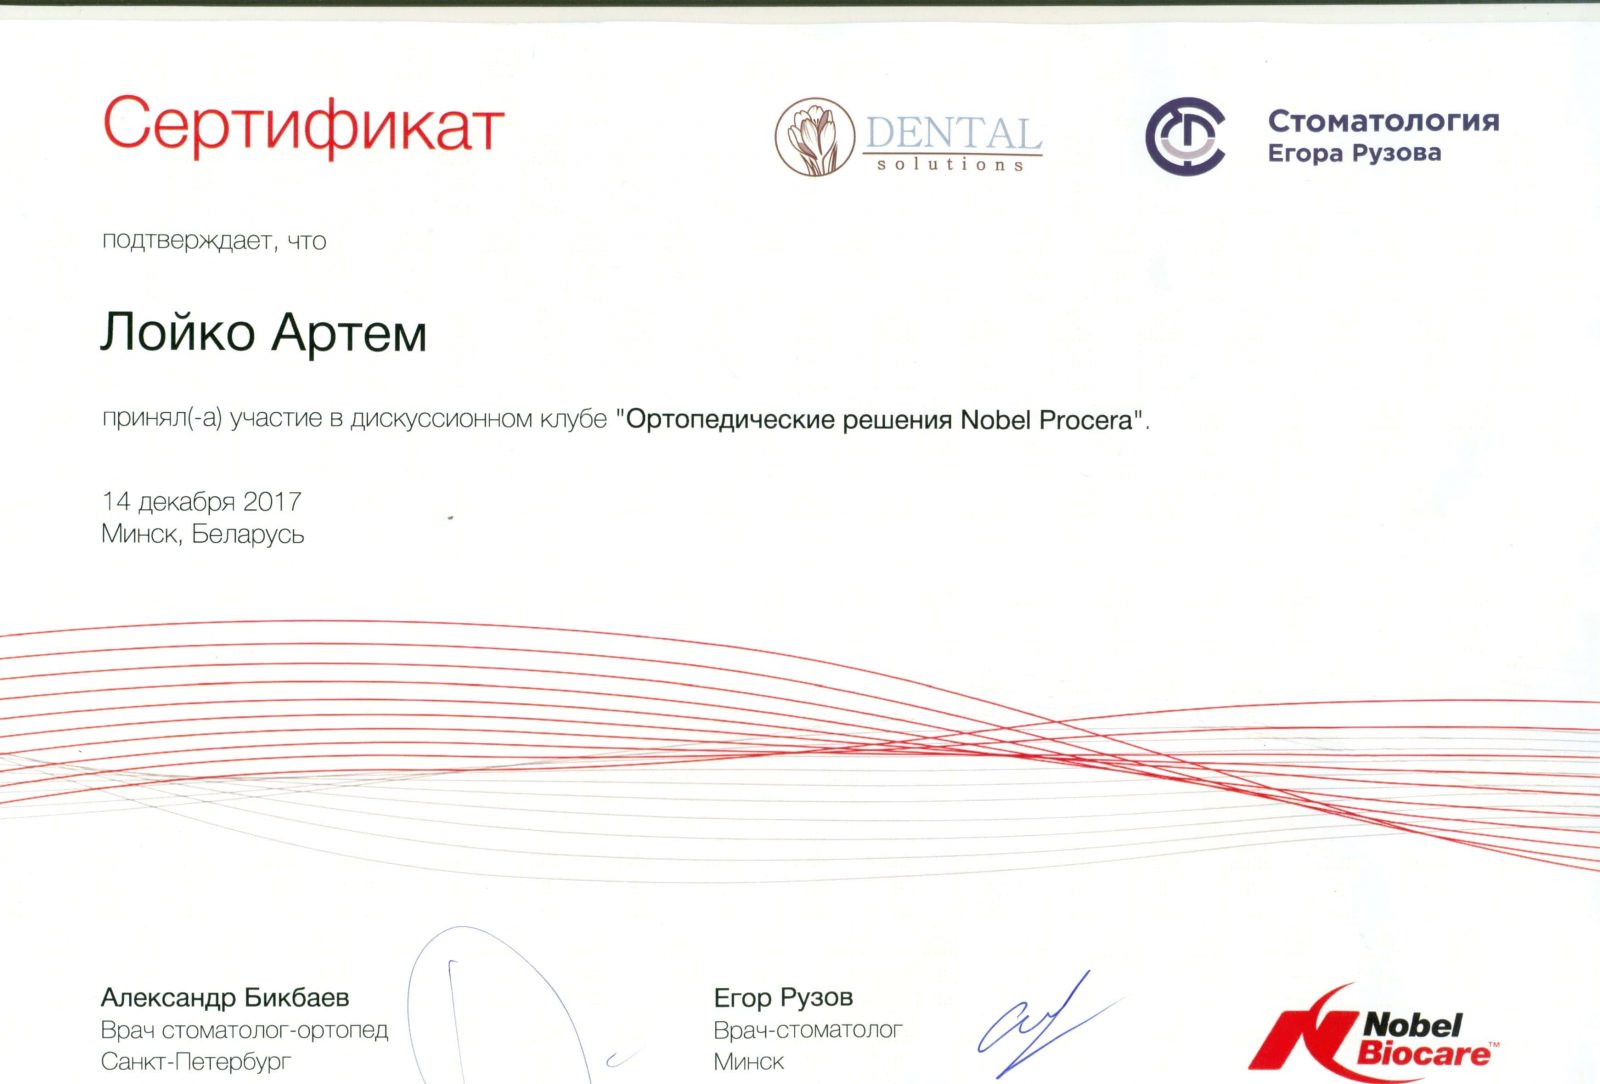 Сертификат Nobel Biocare выдан Лойко Артёму об принятии участия в дискуссионном клубе. Ортопедические решения Nobel Procera/